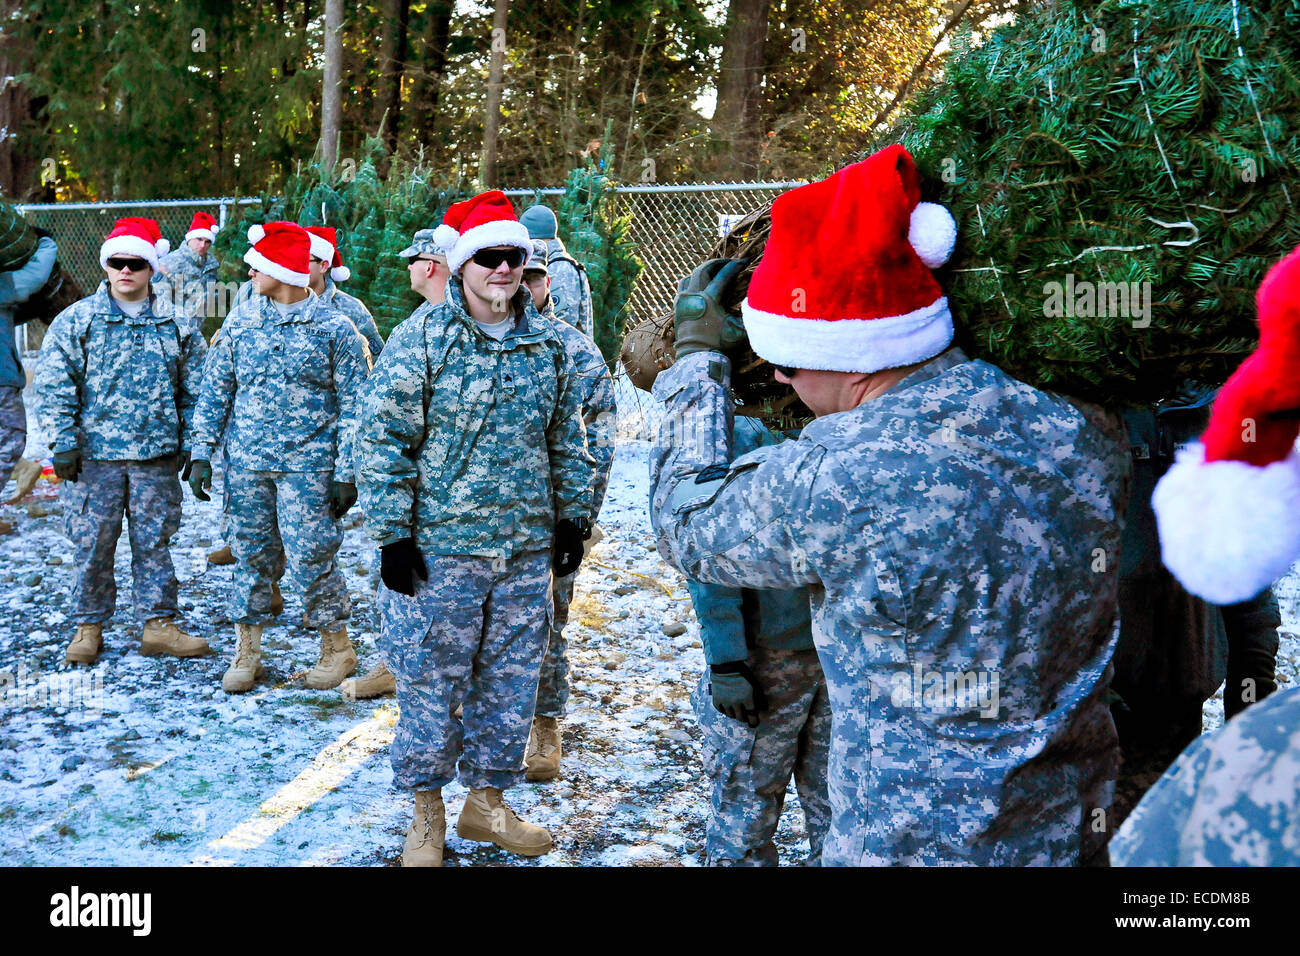 US-Armeesoldaten Santa Hüte tragen entladen Weihnachtsbäume am Joint Base Lewis-McChord als Teil der Bäume für Truppen Programm 2. Dezember 2014 in Tacoma, Washington eintreffen. Weihnachten-Geist-Stiftung in Zusammenarbeit mit FedEx und private Spender mehr als 1.000 kostenlose Weihnachtsbäume an Soldaten und deren Angehörige auf der Basis. Stockfoto